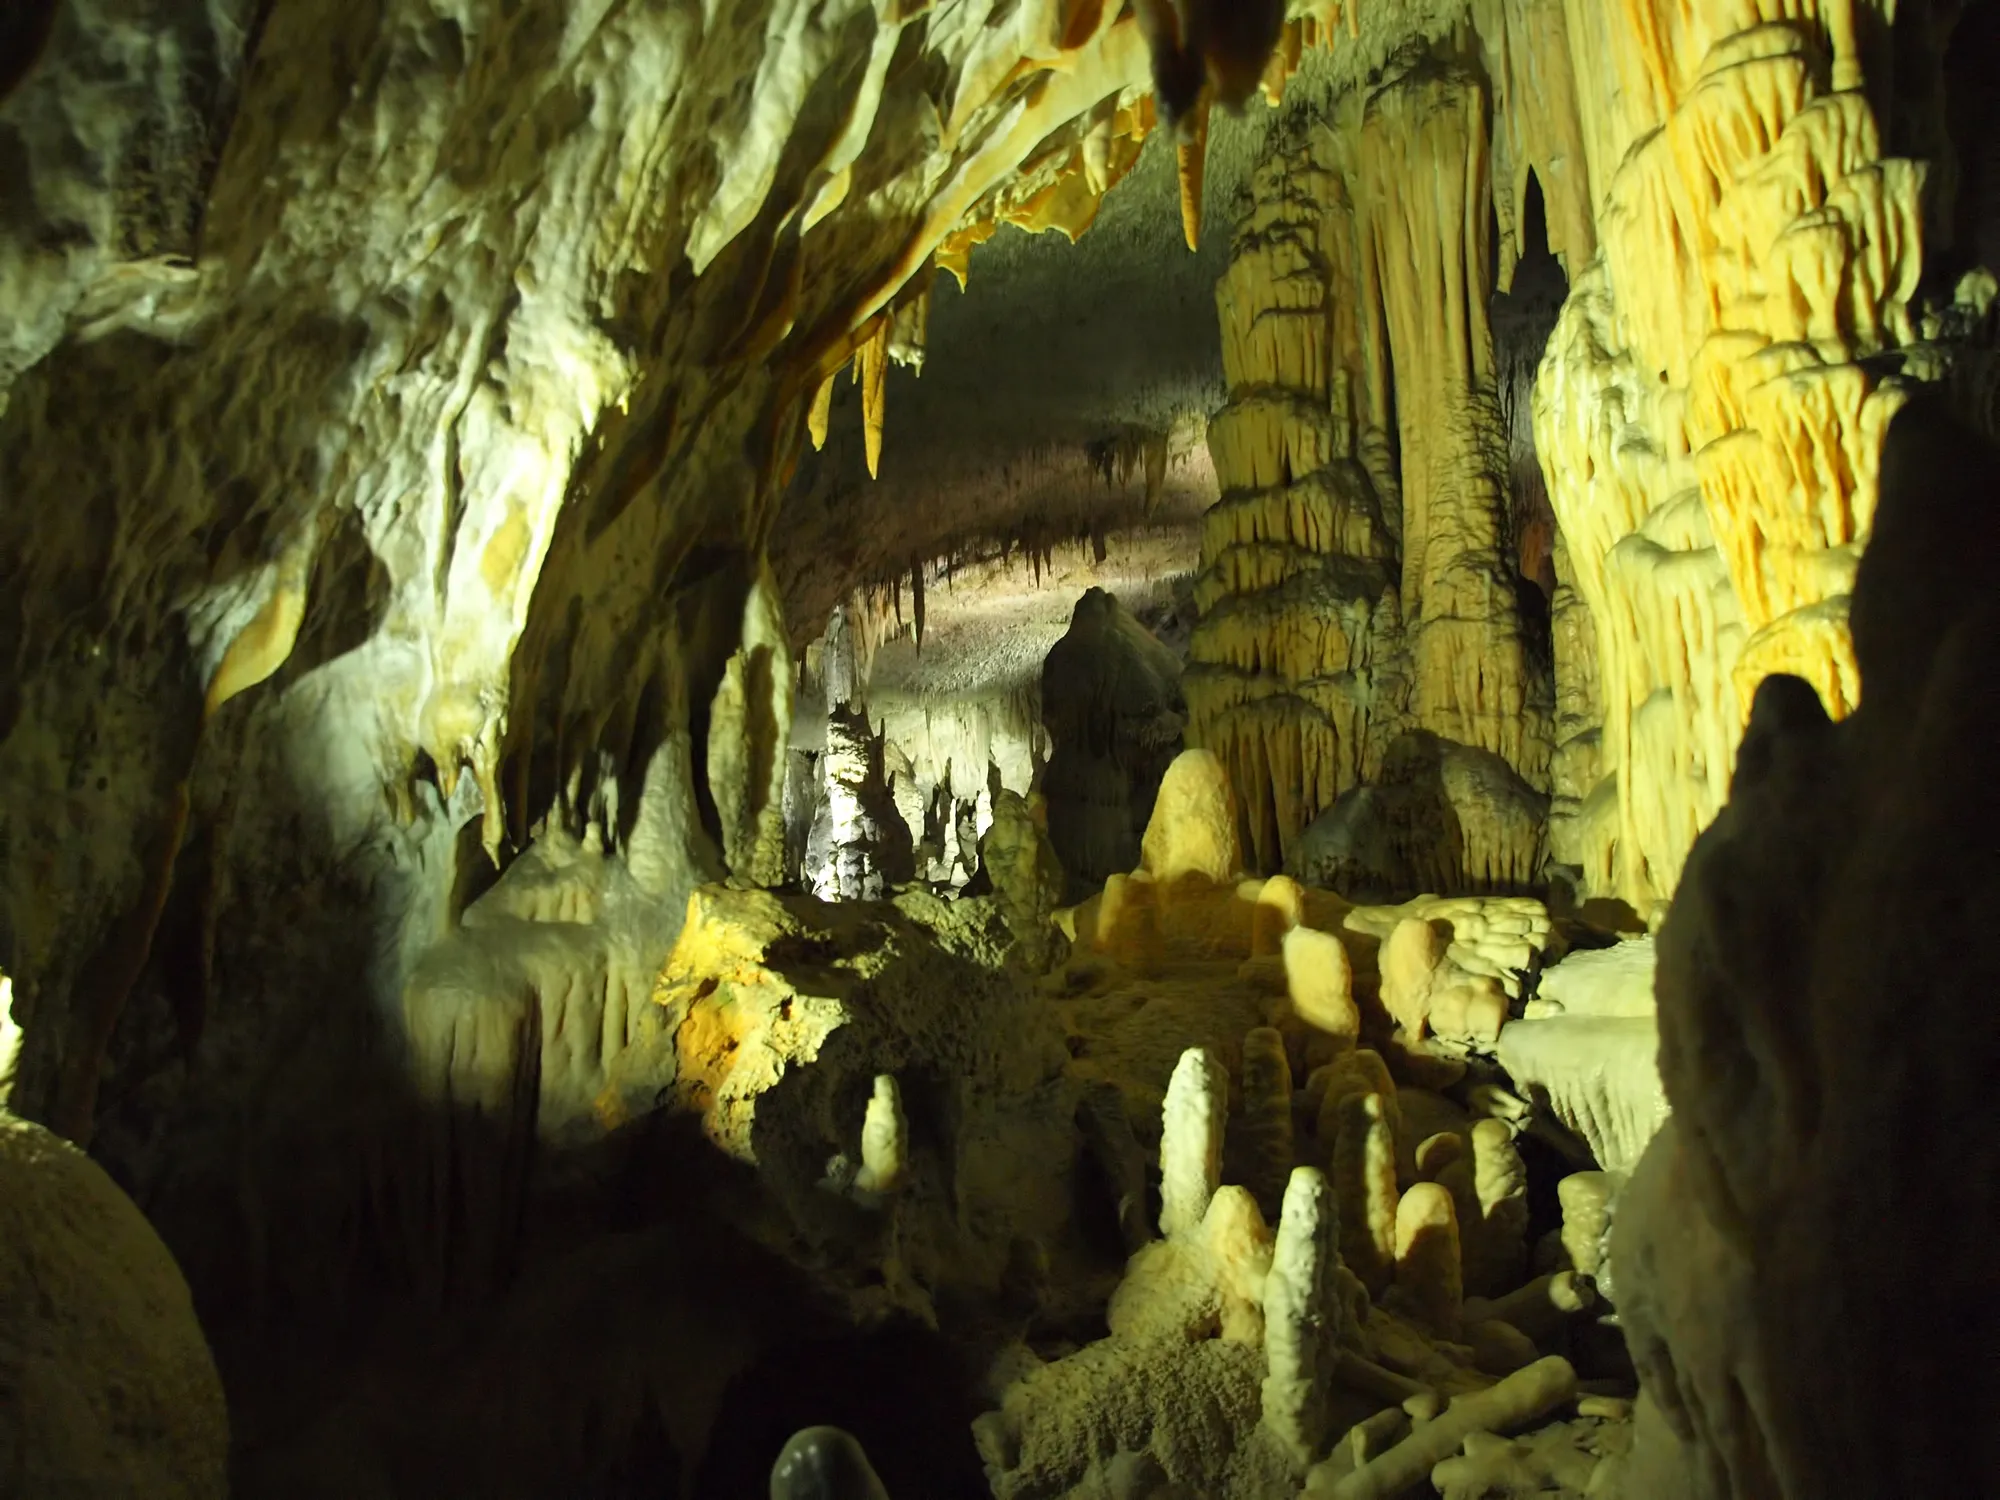 La grotte de Postojna
© iStock/GoranStimac